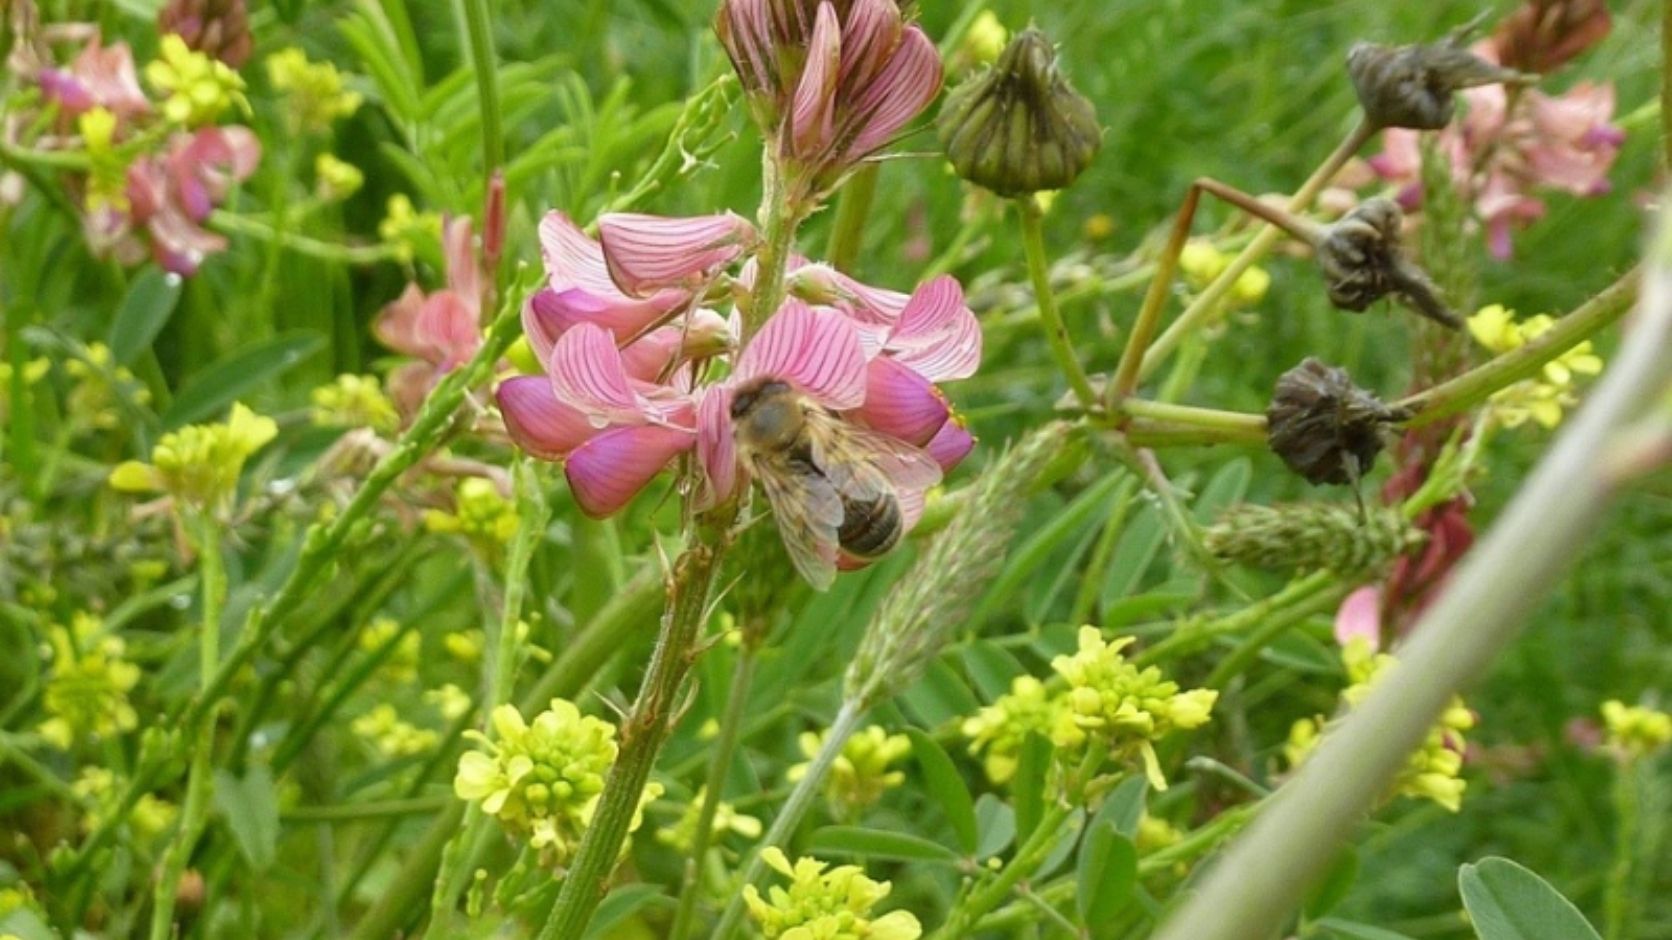 abeille qui butine une fleur